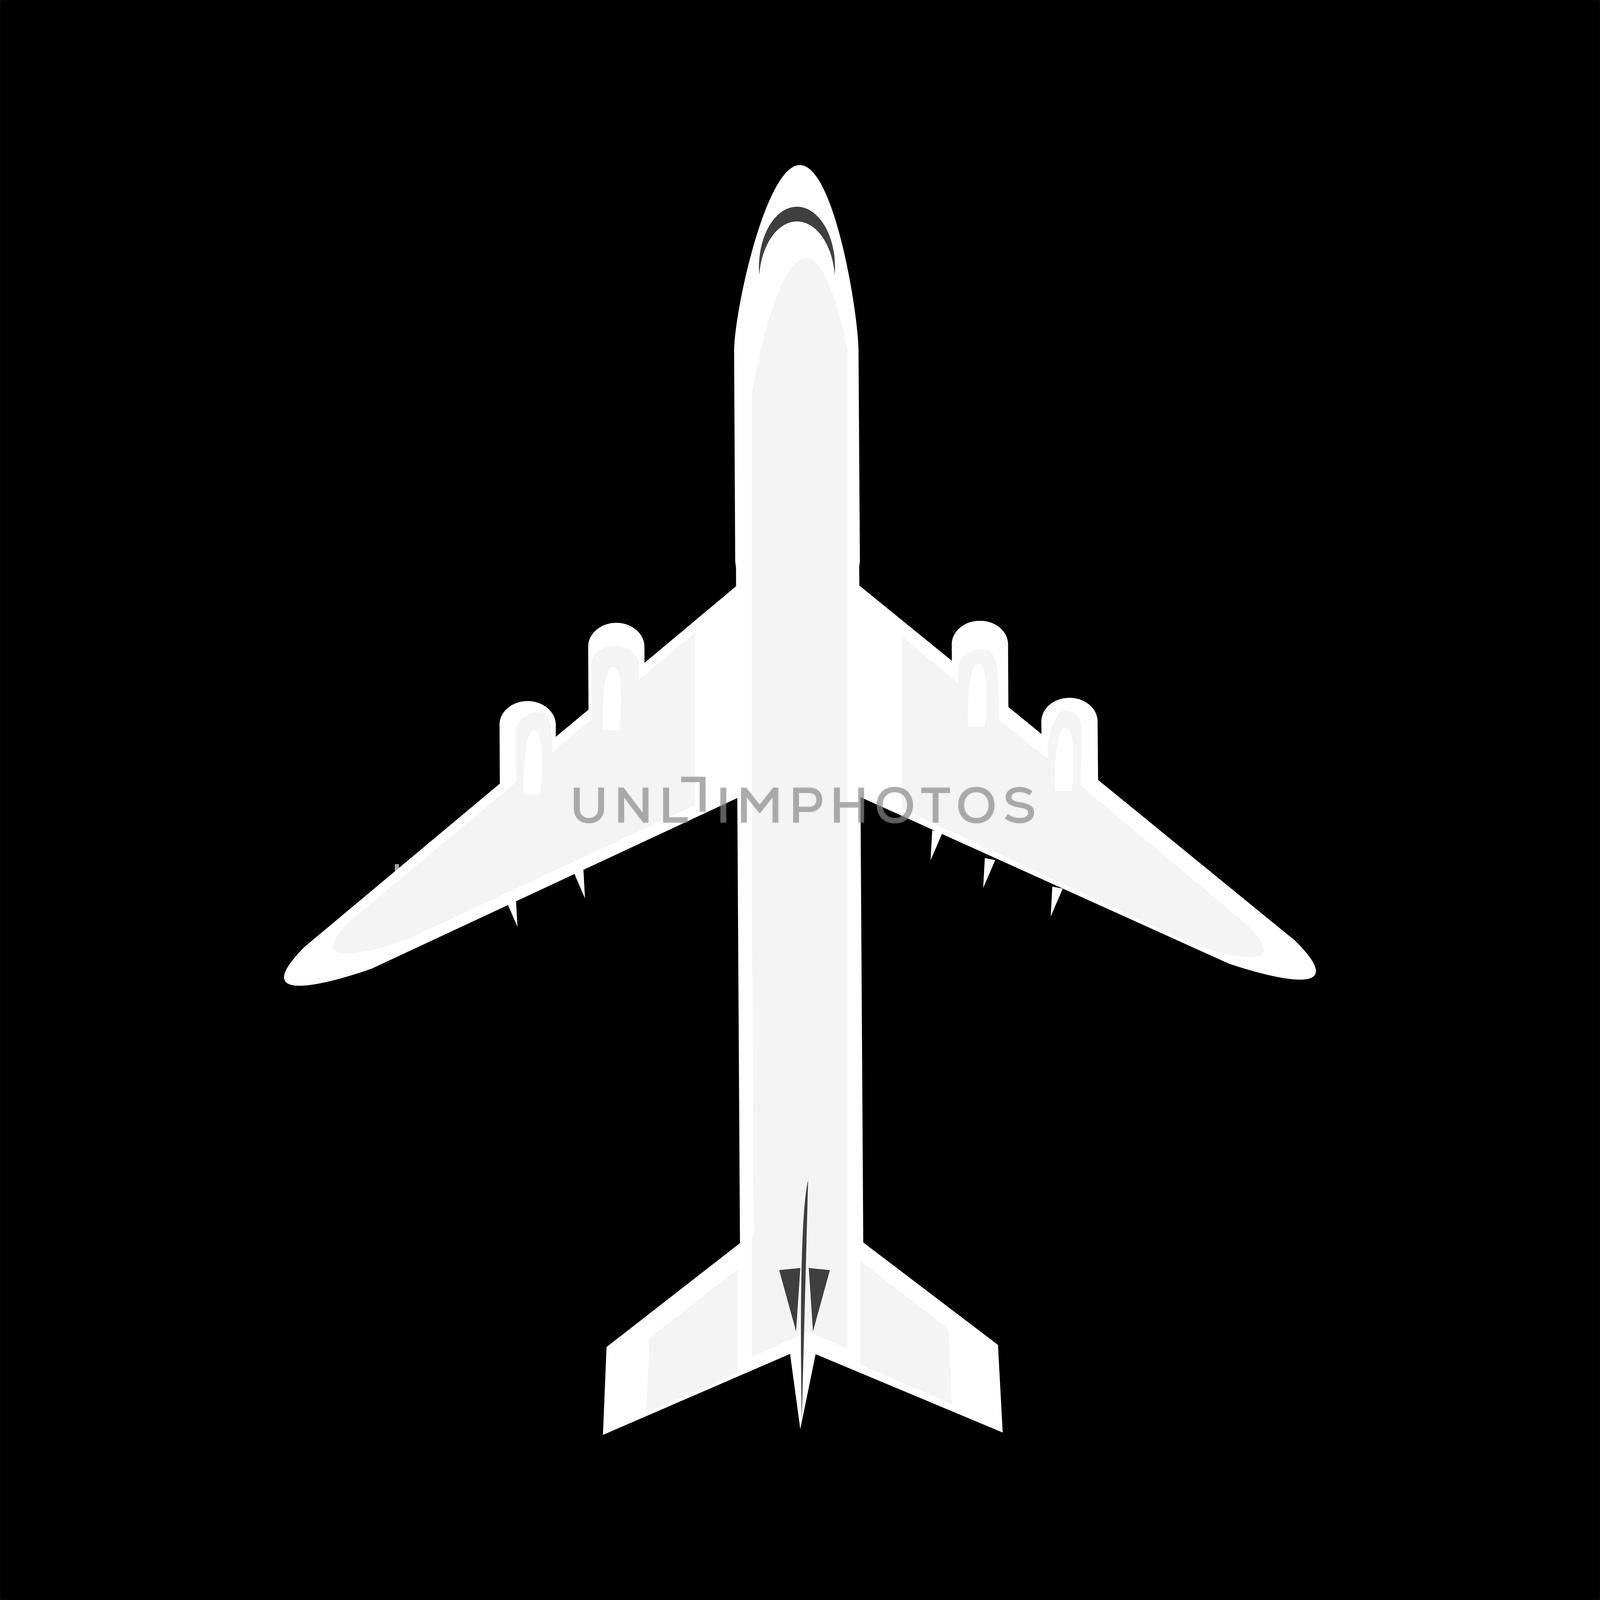 Plane isolated on black background